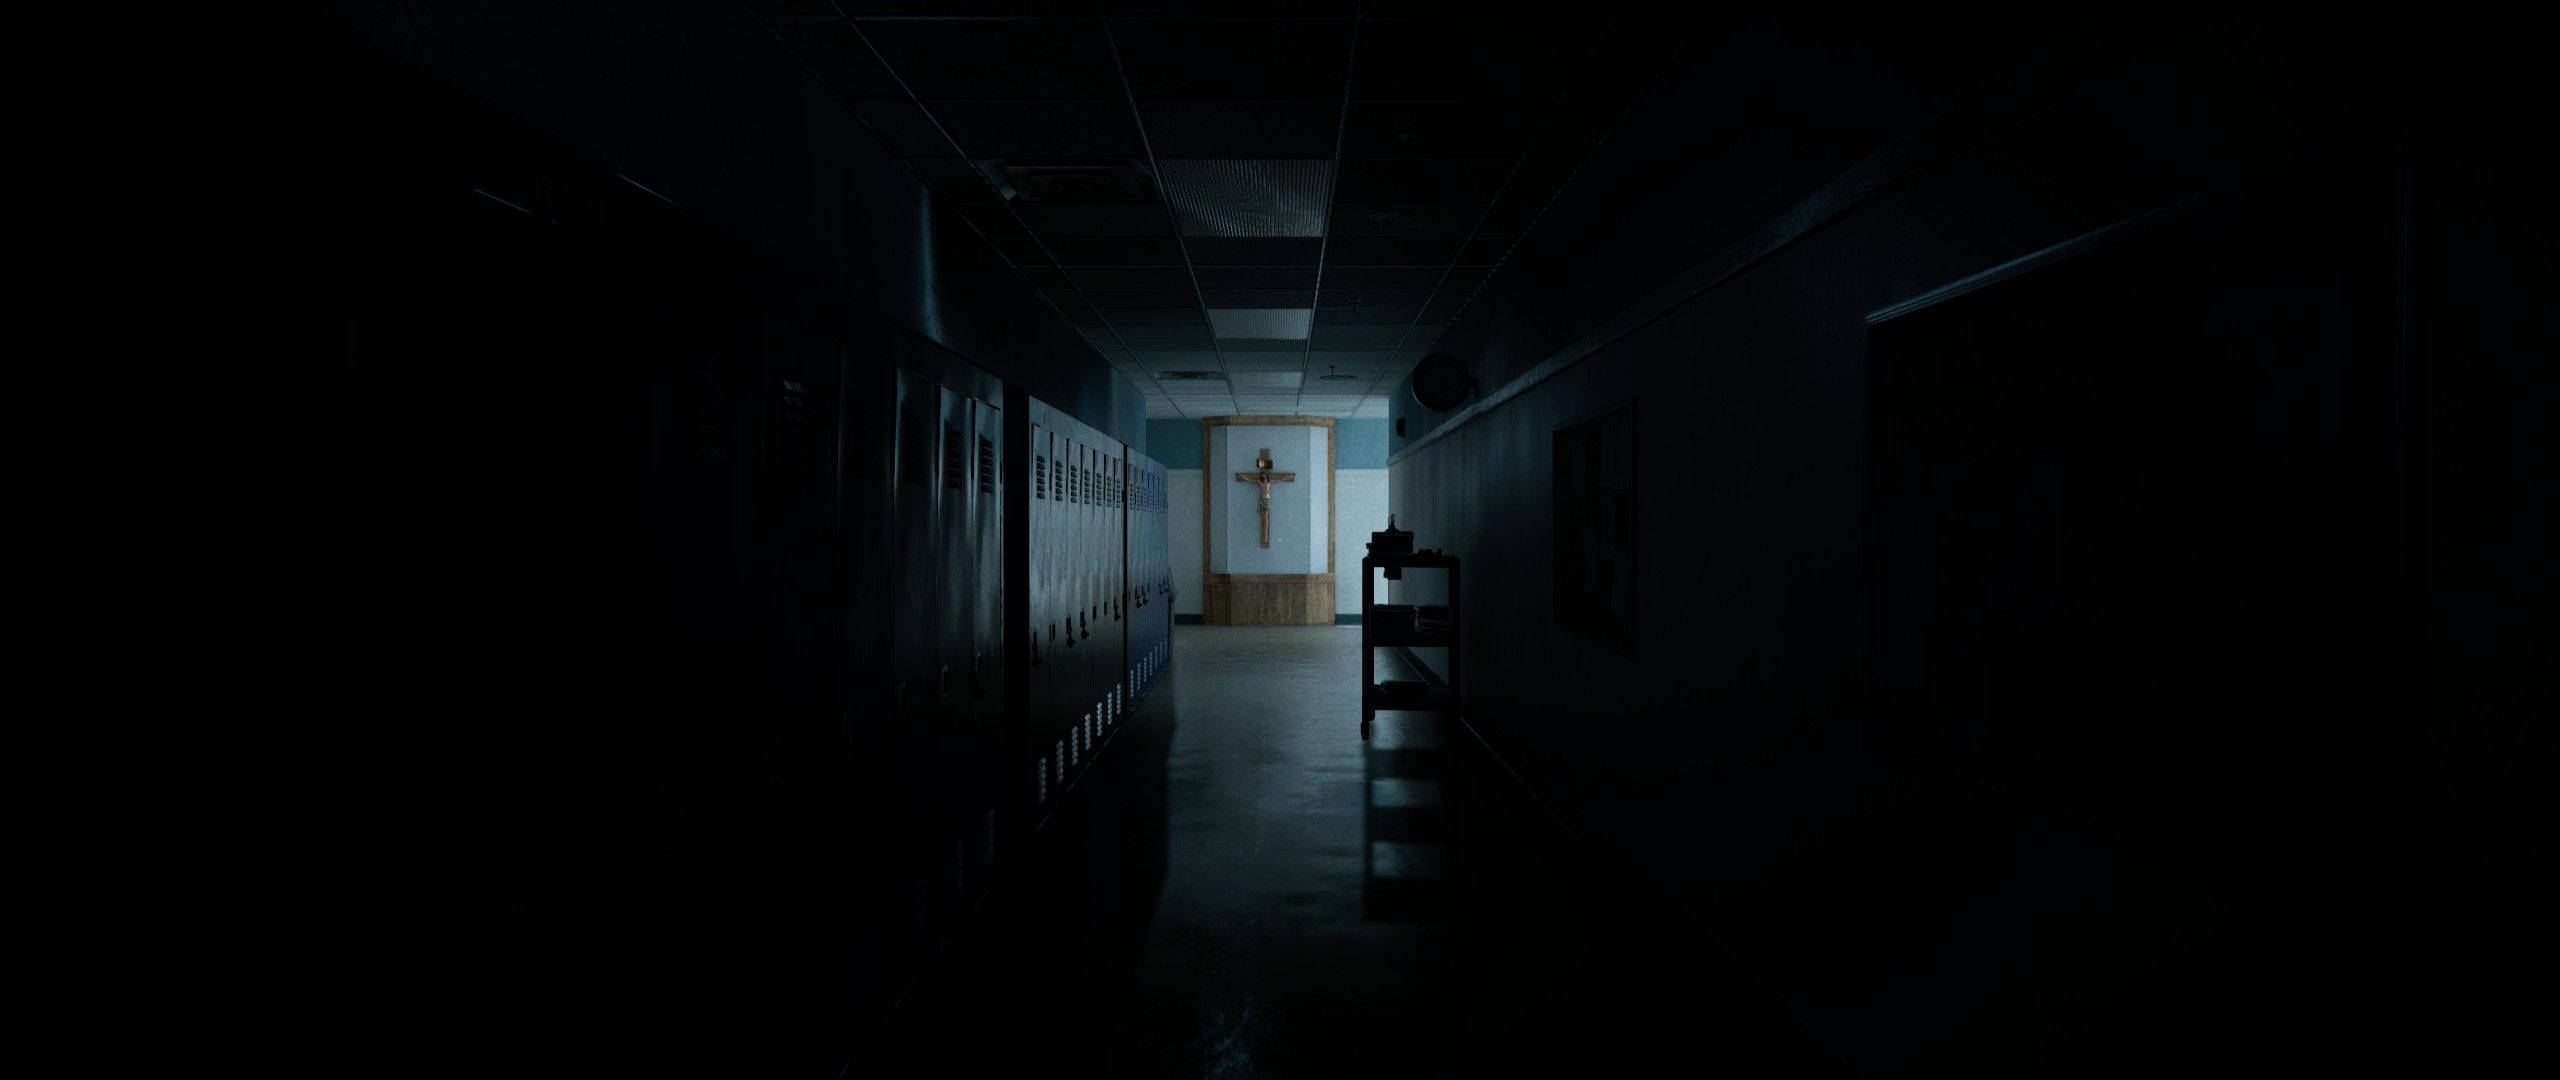 Dark Church Hallway Background